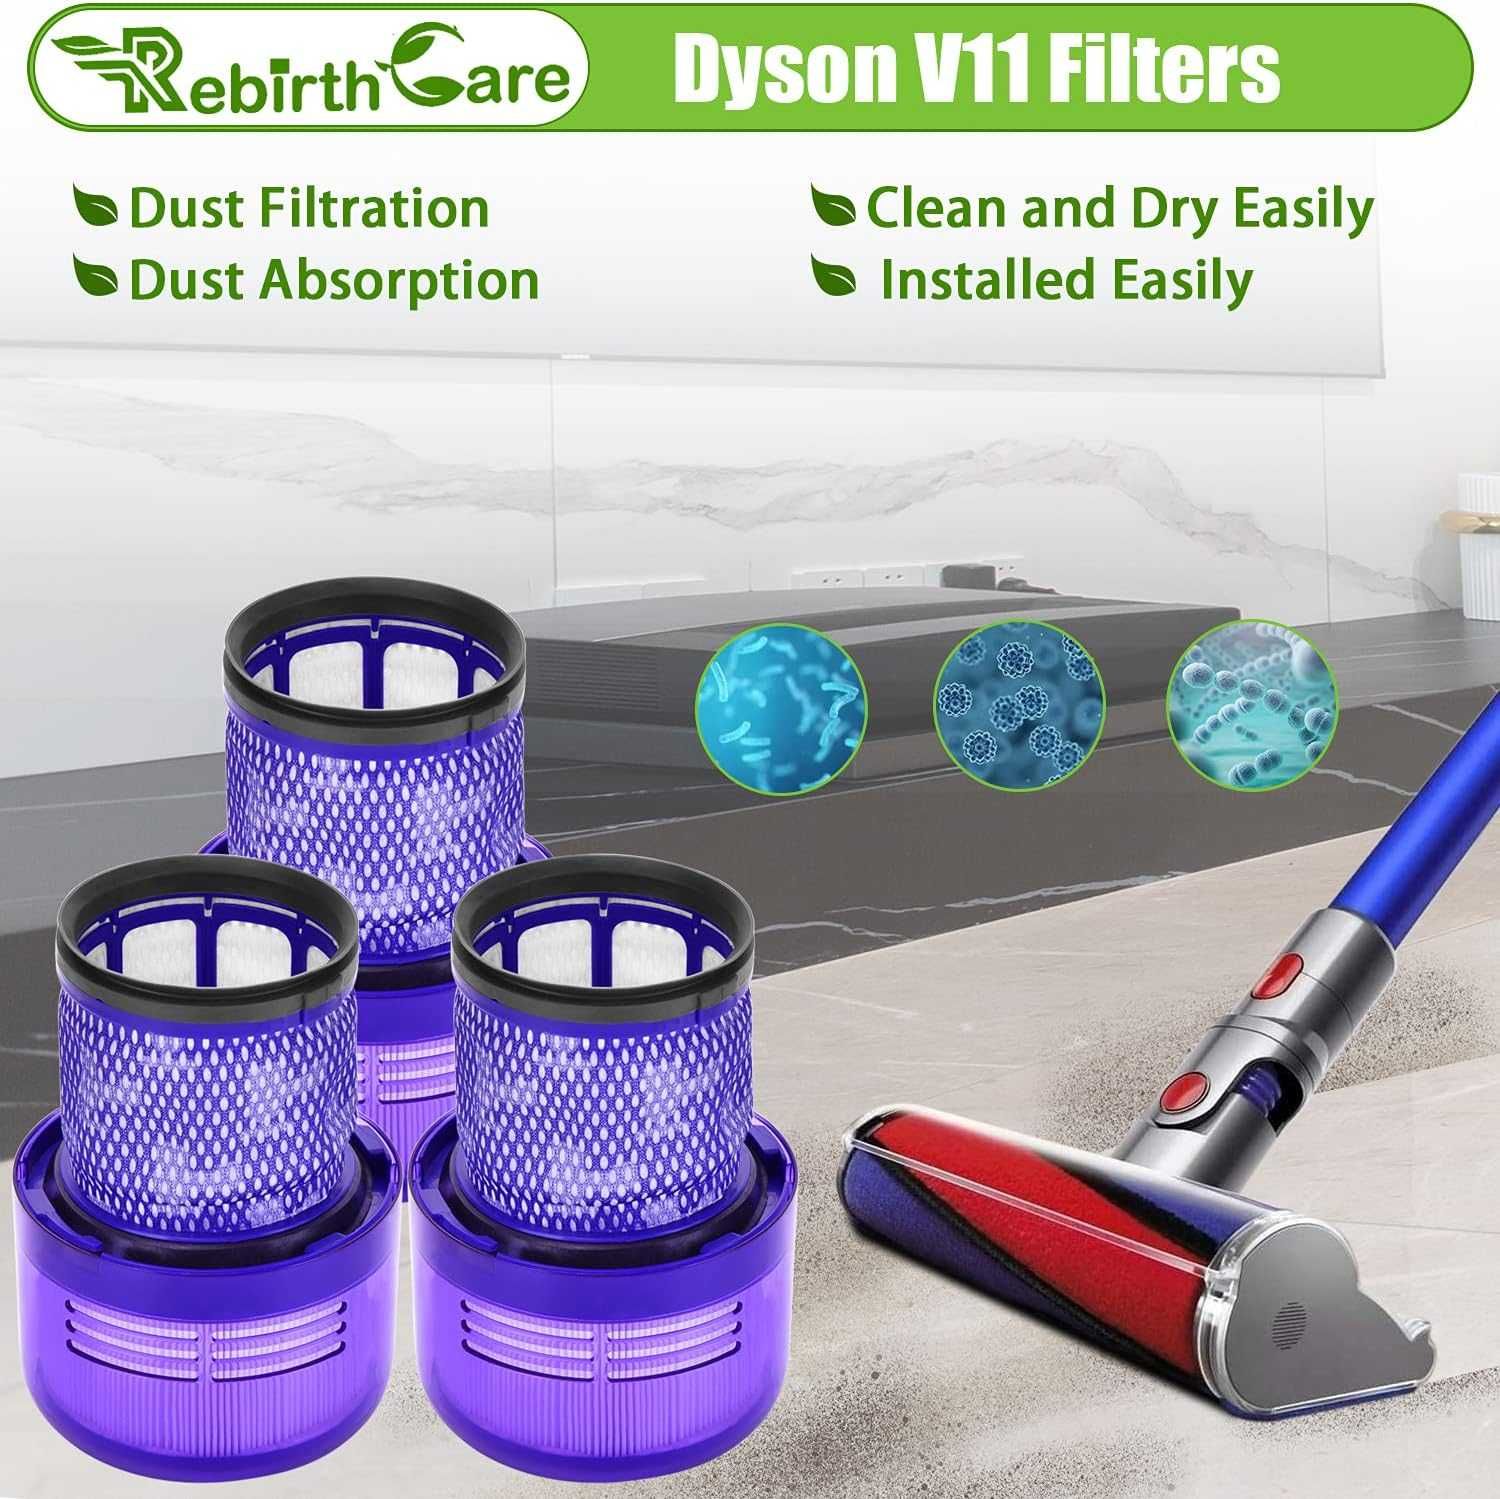 Rebirthcare 3-pak filtrów V11 do Dyson V11